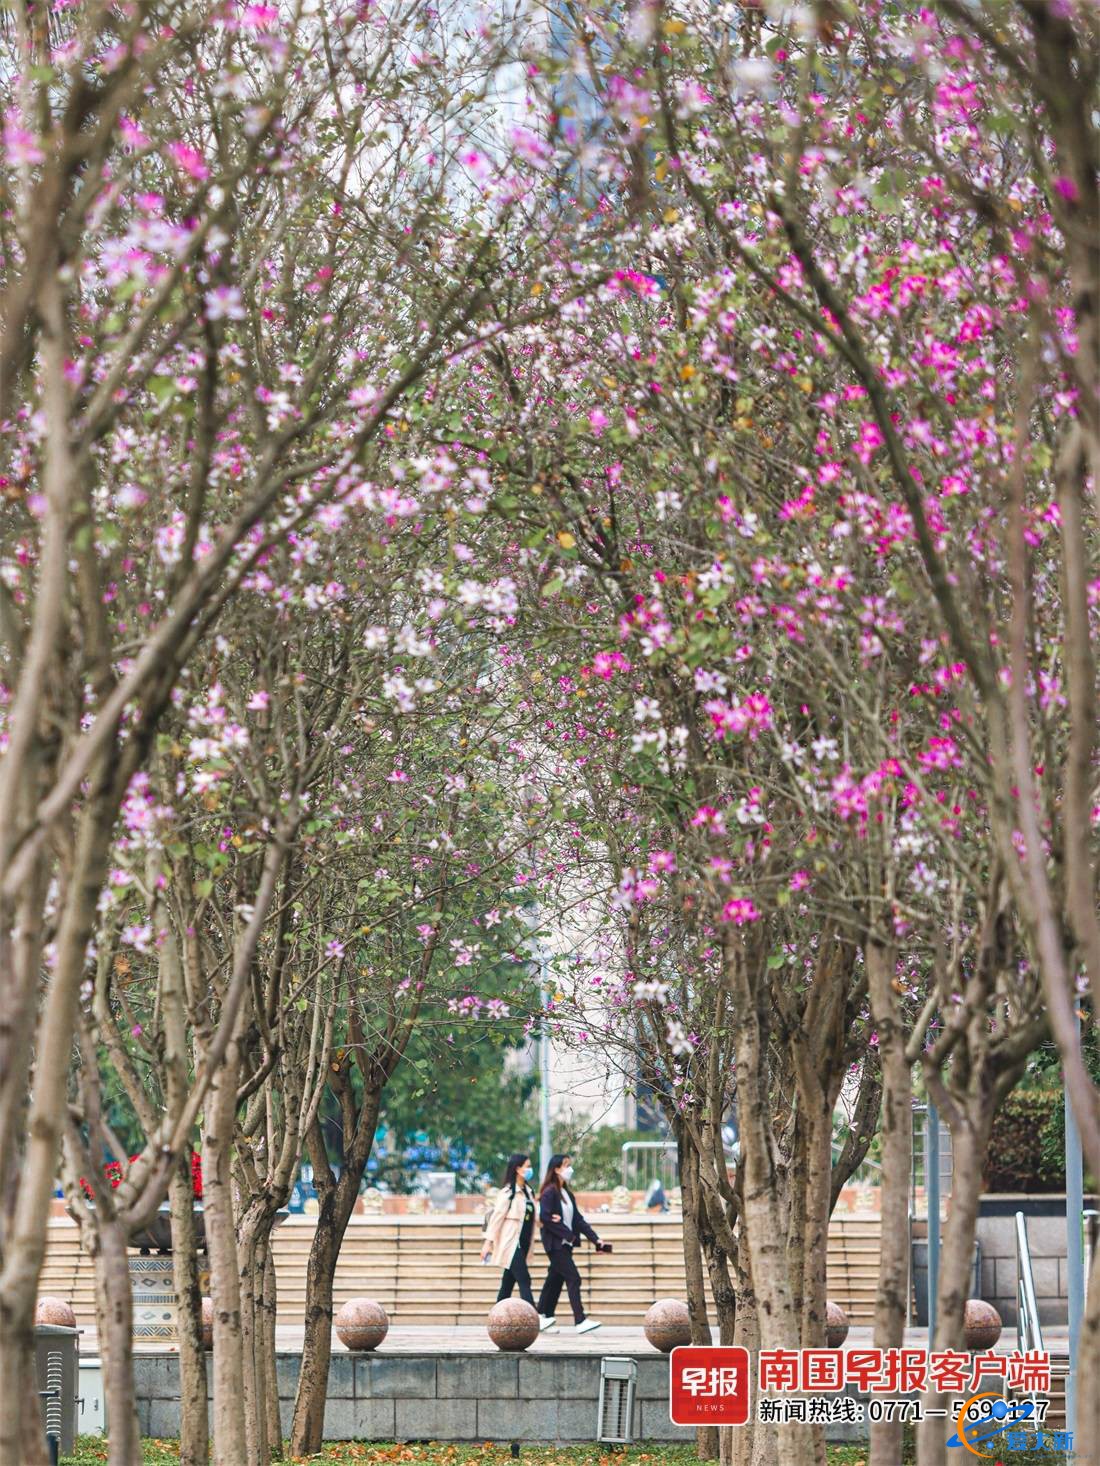 又到赏花时！一树一世界，邕城洋紫荆惊艳亮相-1.jpg